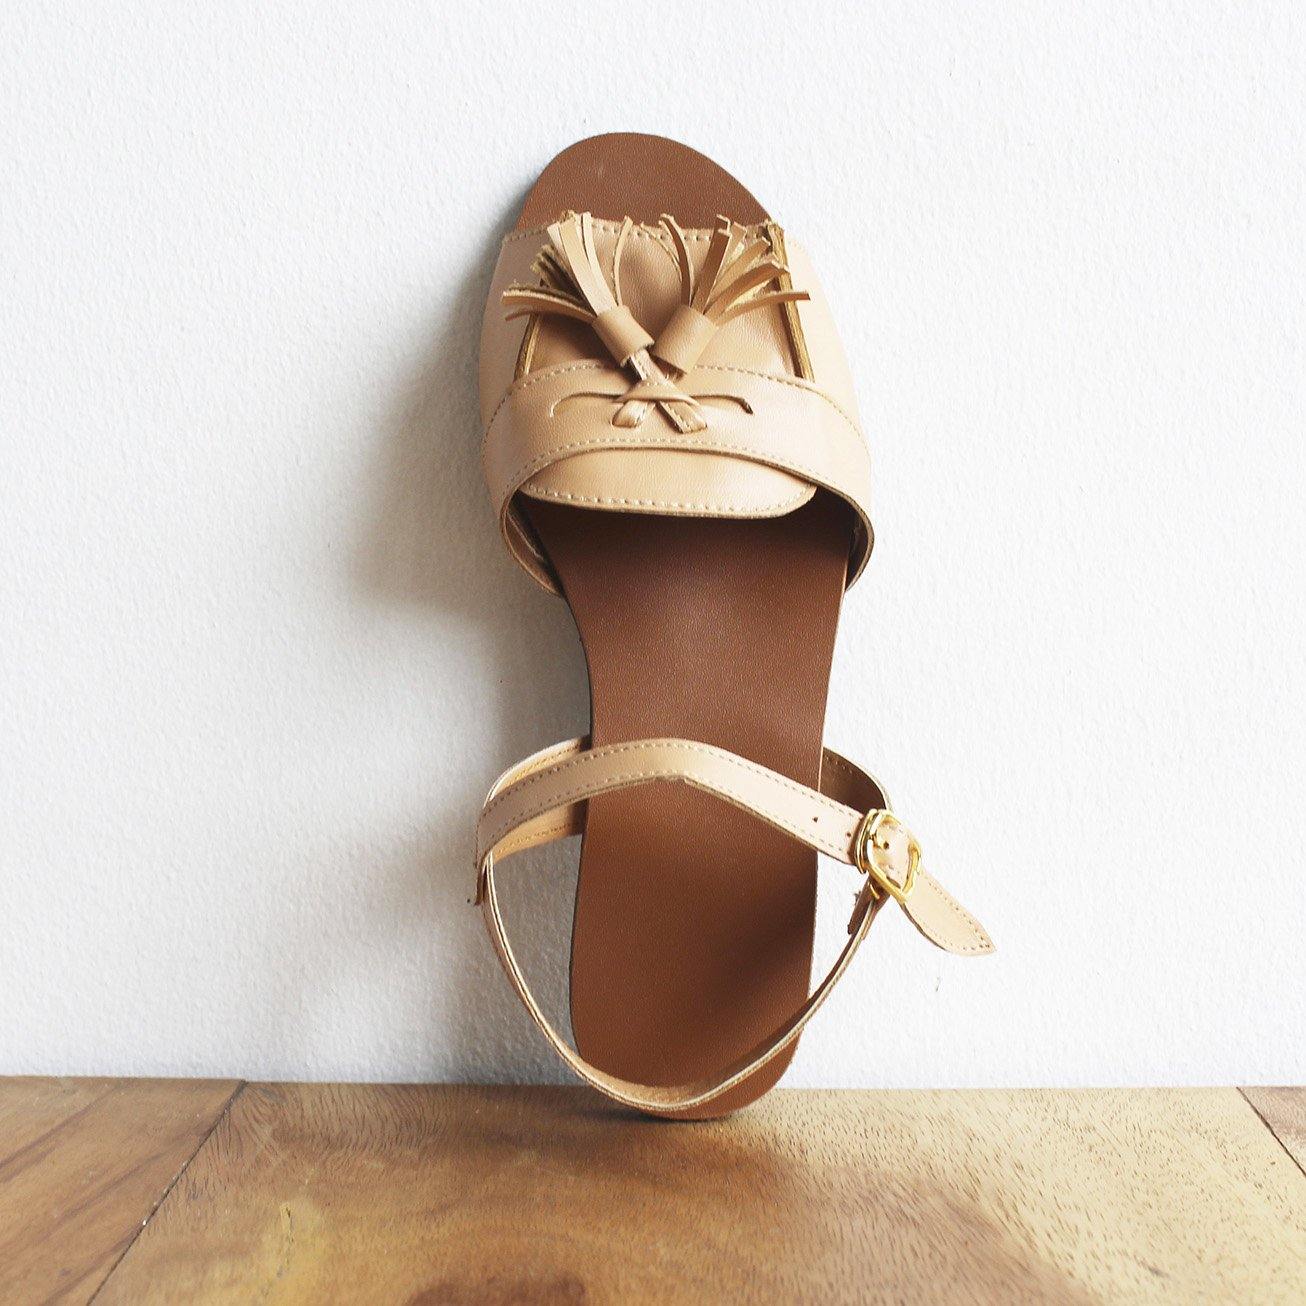 Tasseled Sandals (5 pairs per set) - Risque Manufacturing